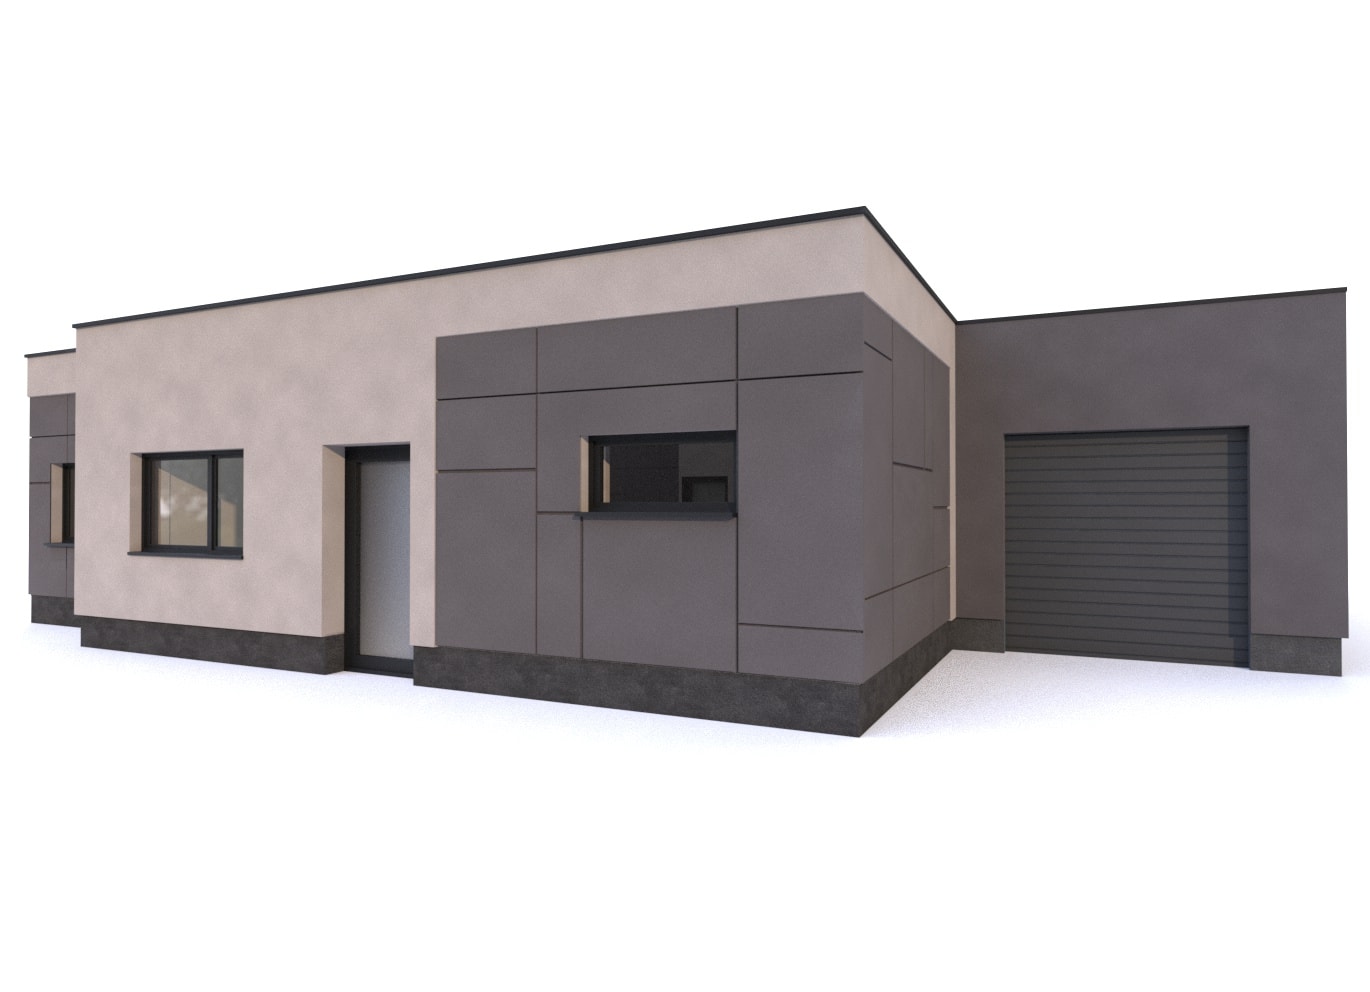 vizualizace šedého jednopatrového rodinného domu s garáží